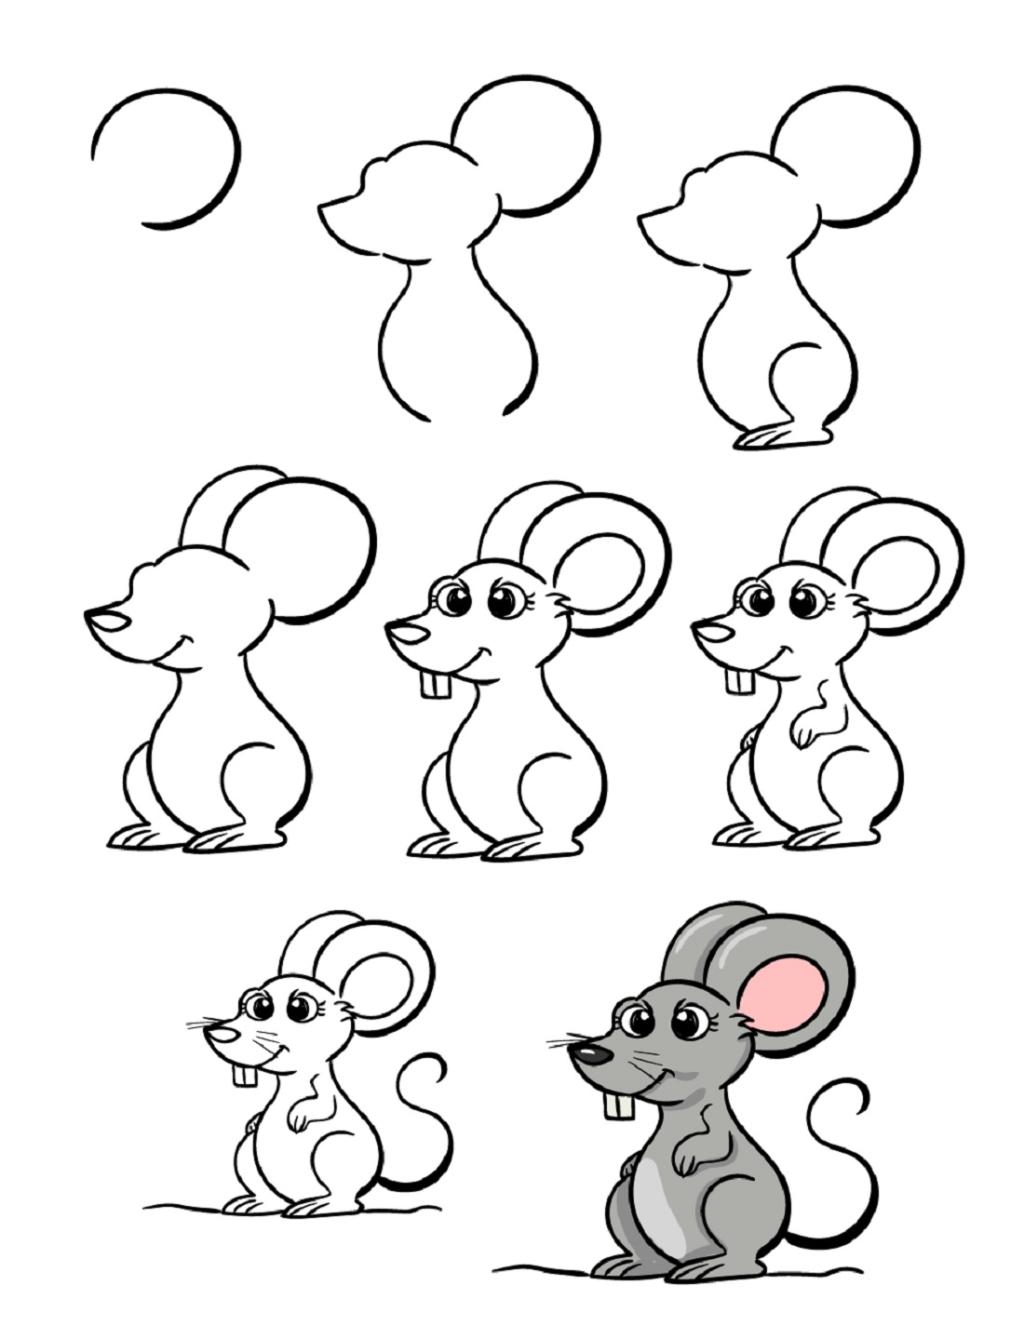 نقاشی شیر و موش مرحله به مرحله 5